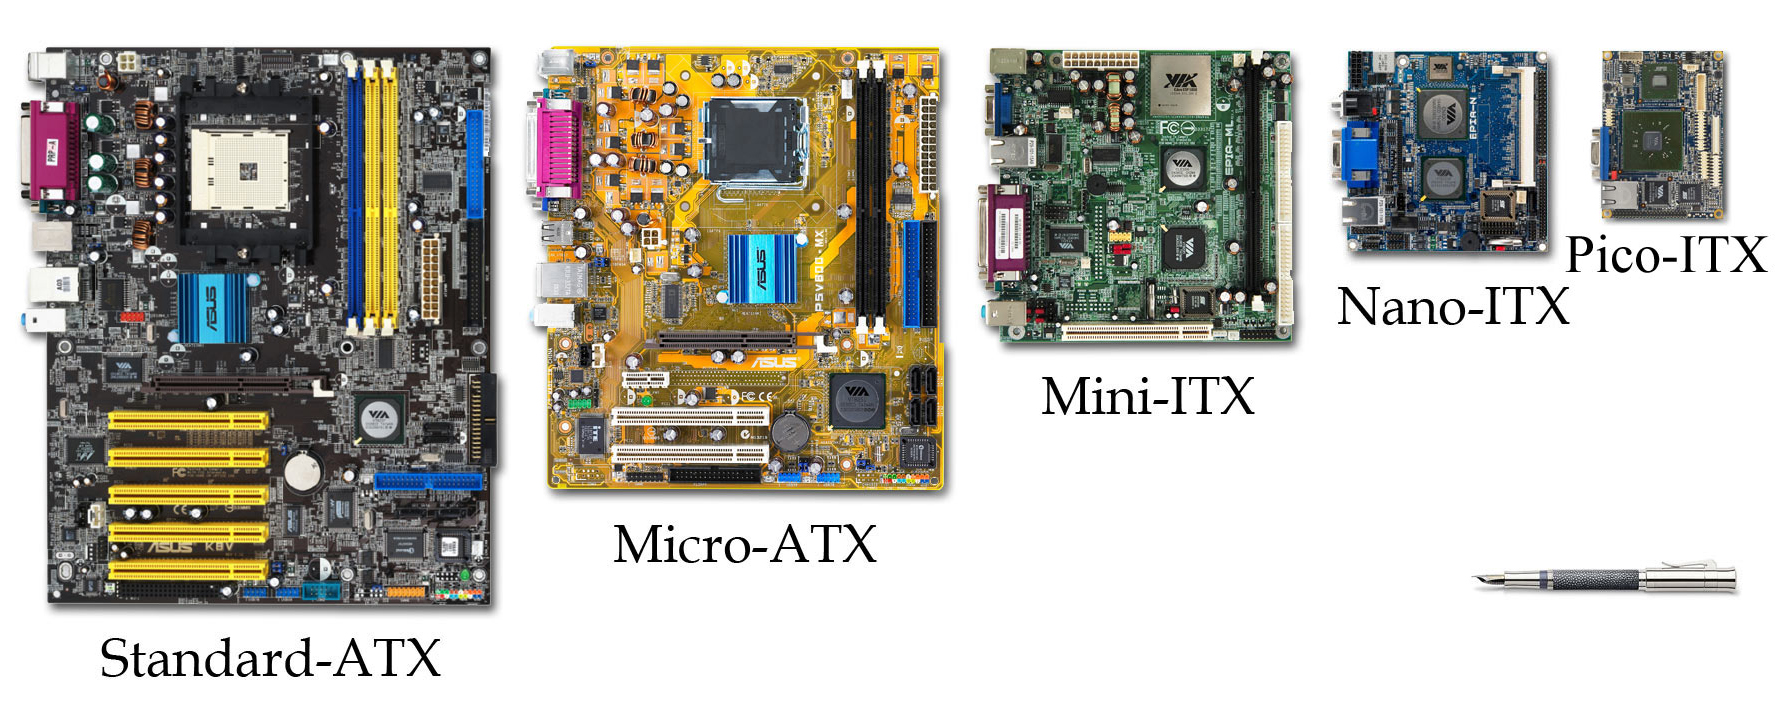 File:VIA Mini ITX Form Factor Comparison. Wikimedia Commons